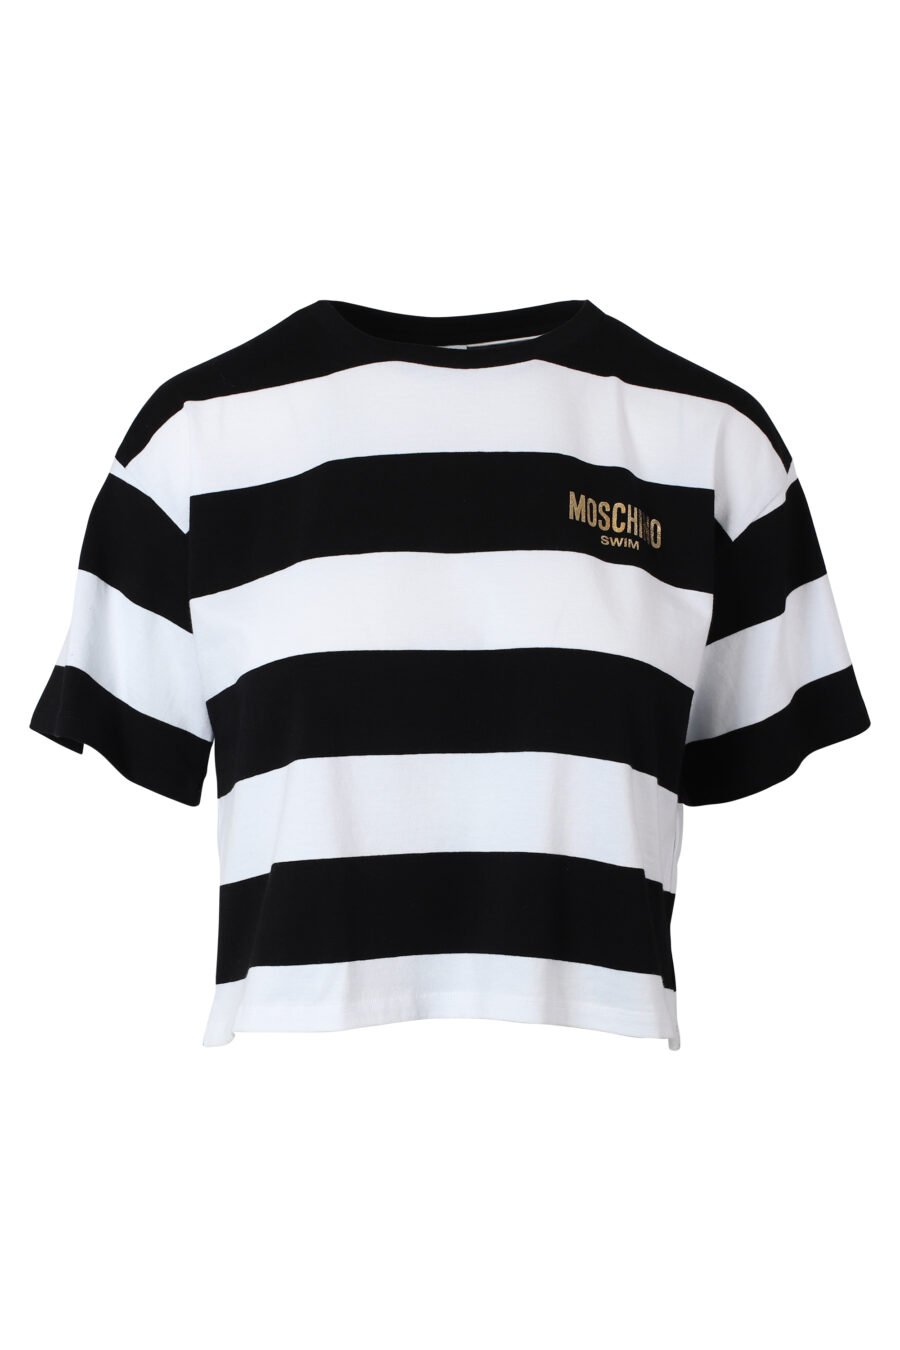 Camiseta bicolor de rayas blancas y negras con minilogo dorado - IMG 9797